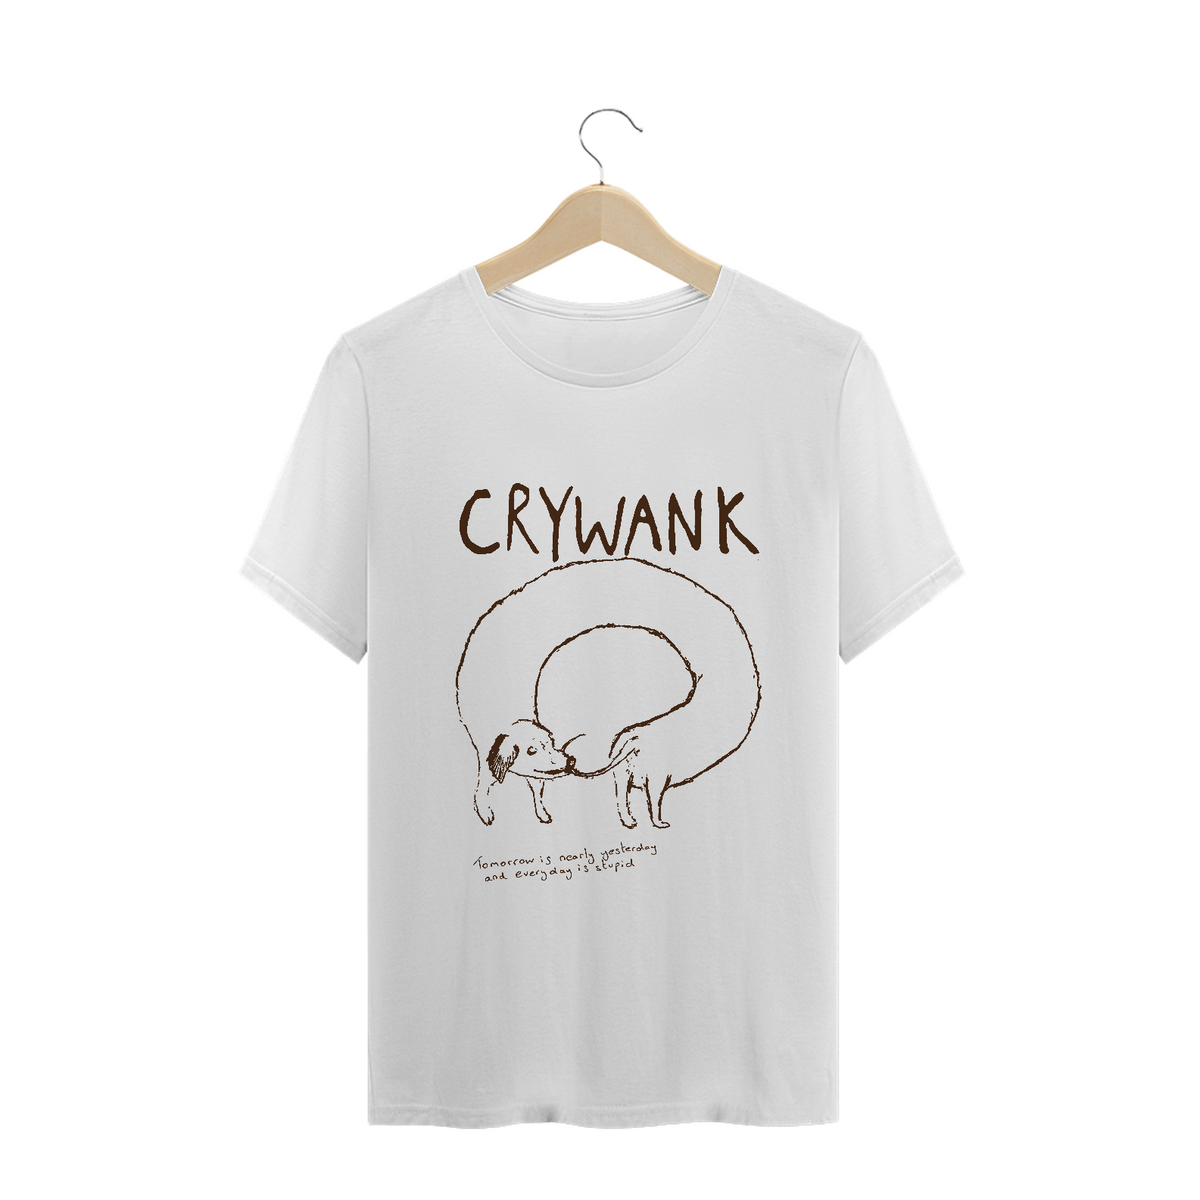 Nome do produto: CRYWANK